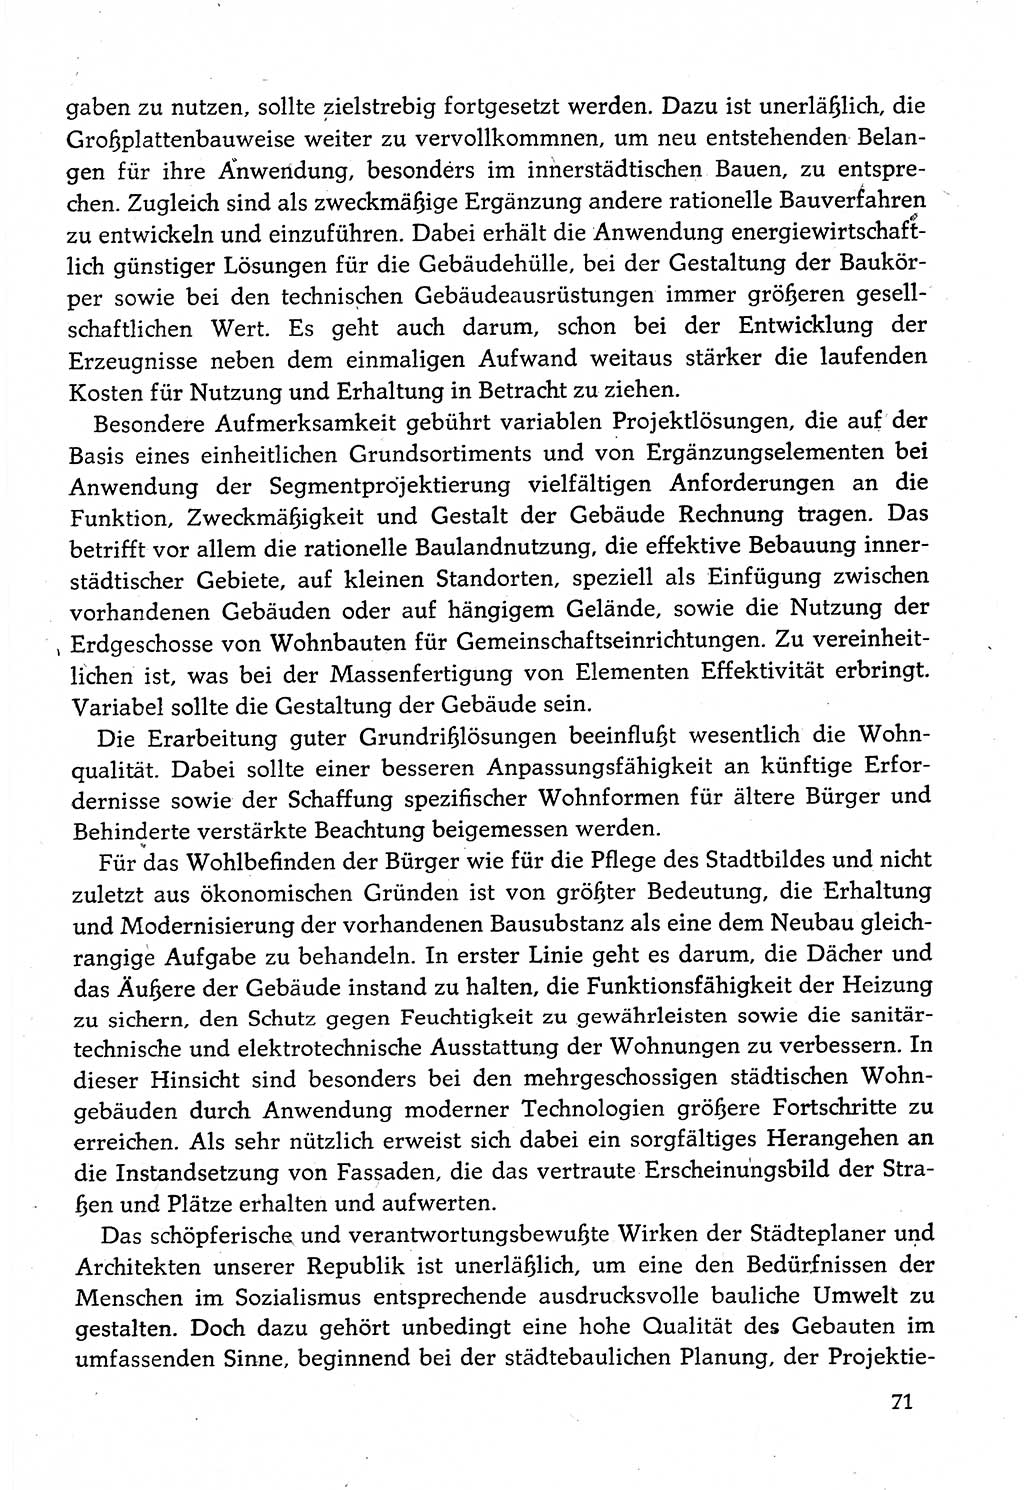 Dokumente der Sozialistischen Einheitspartei Deutschlands (SED) [Deutsche Demokratische Republik (DDR)] 1982-1983, Seite 71 (Dok. SED DDR 1982-1983, S. 71)